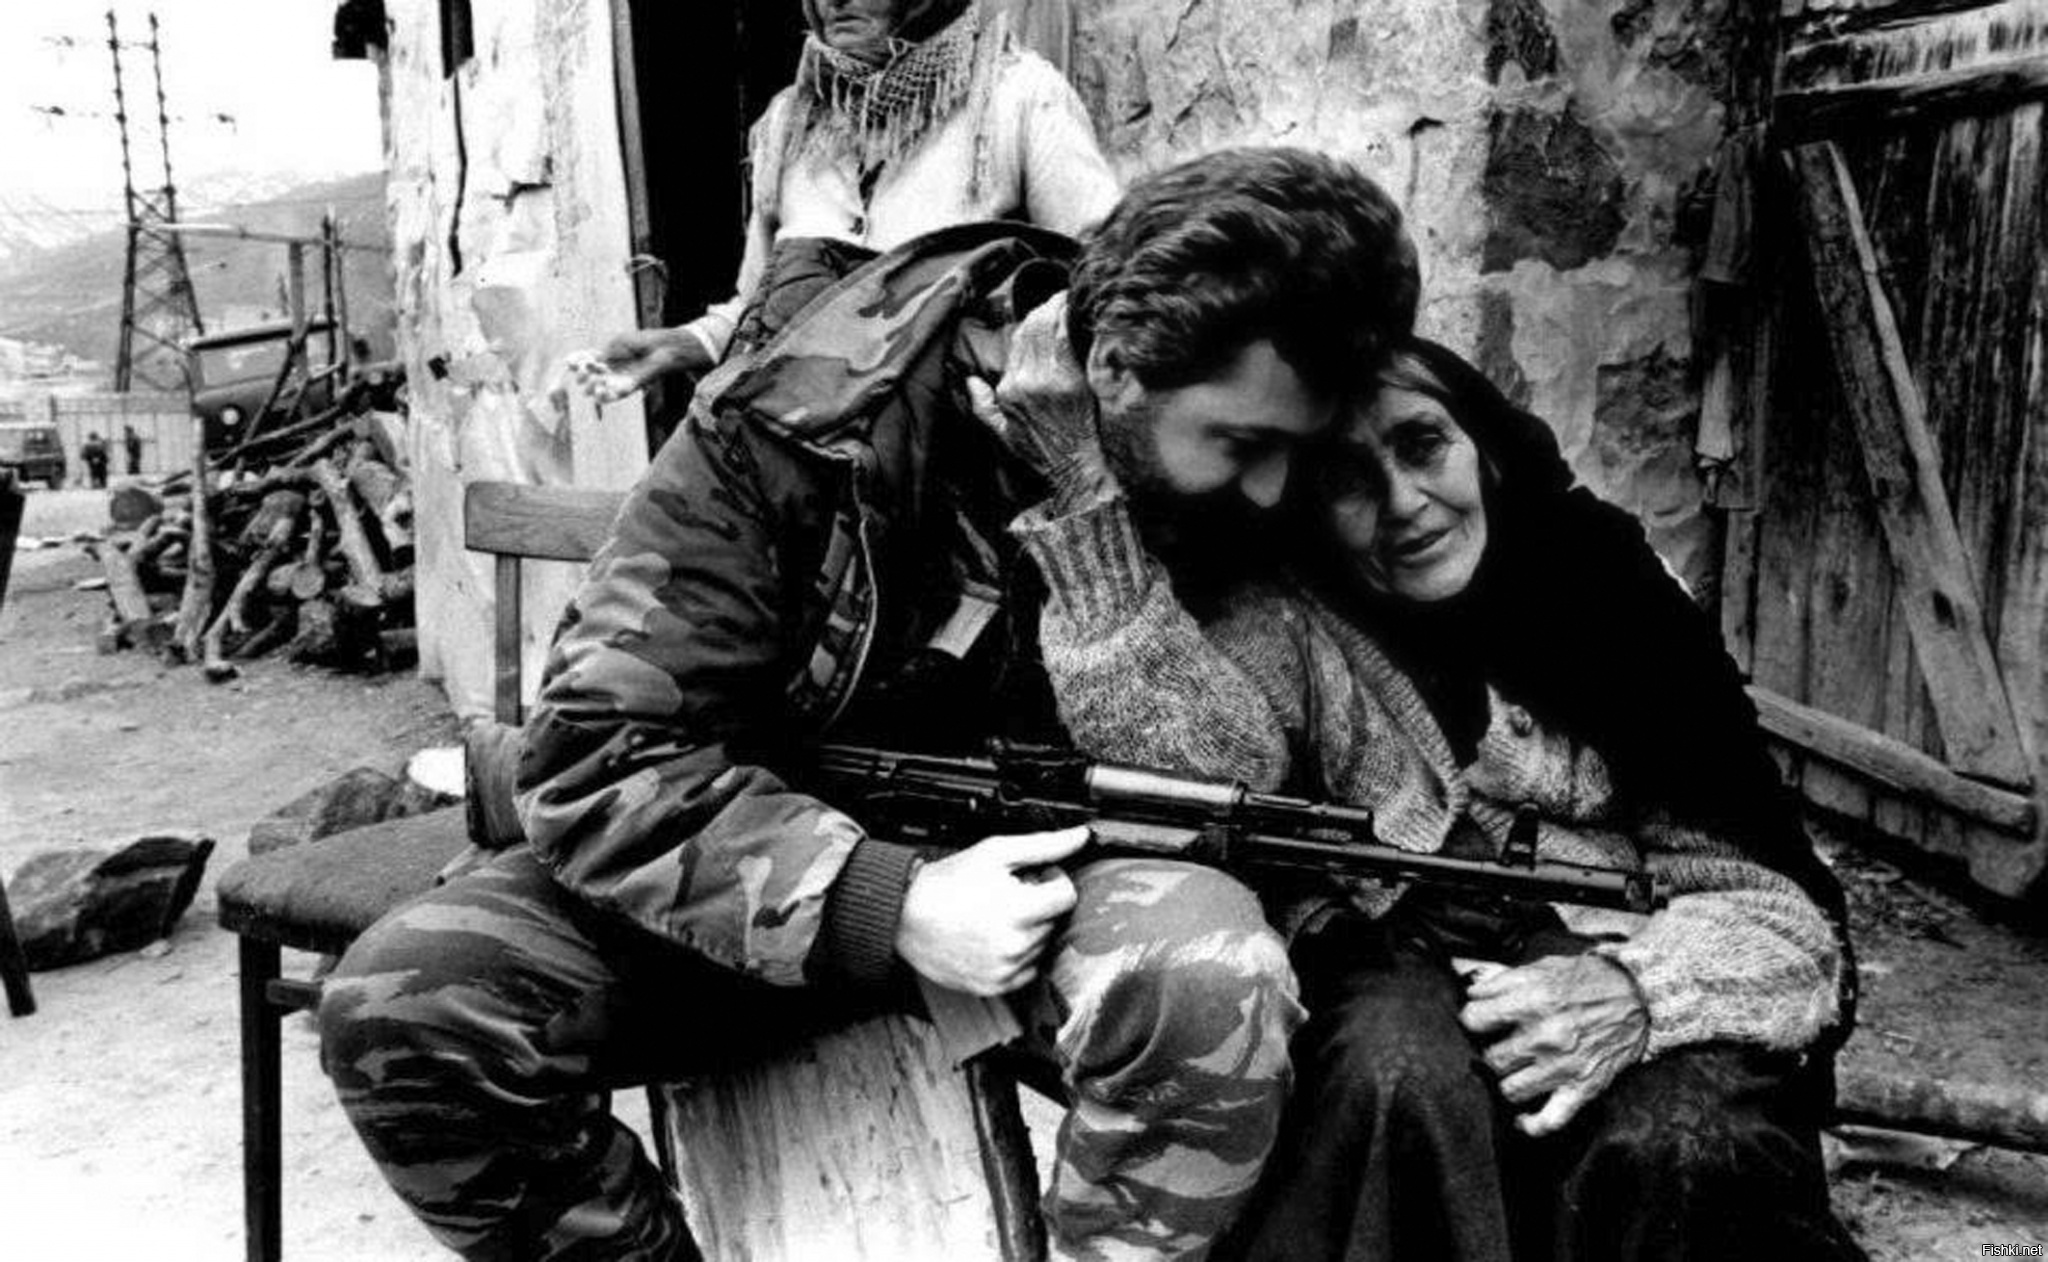 армянский солдат и азербайджанская бабушка